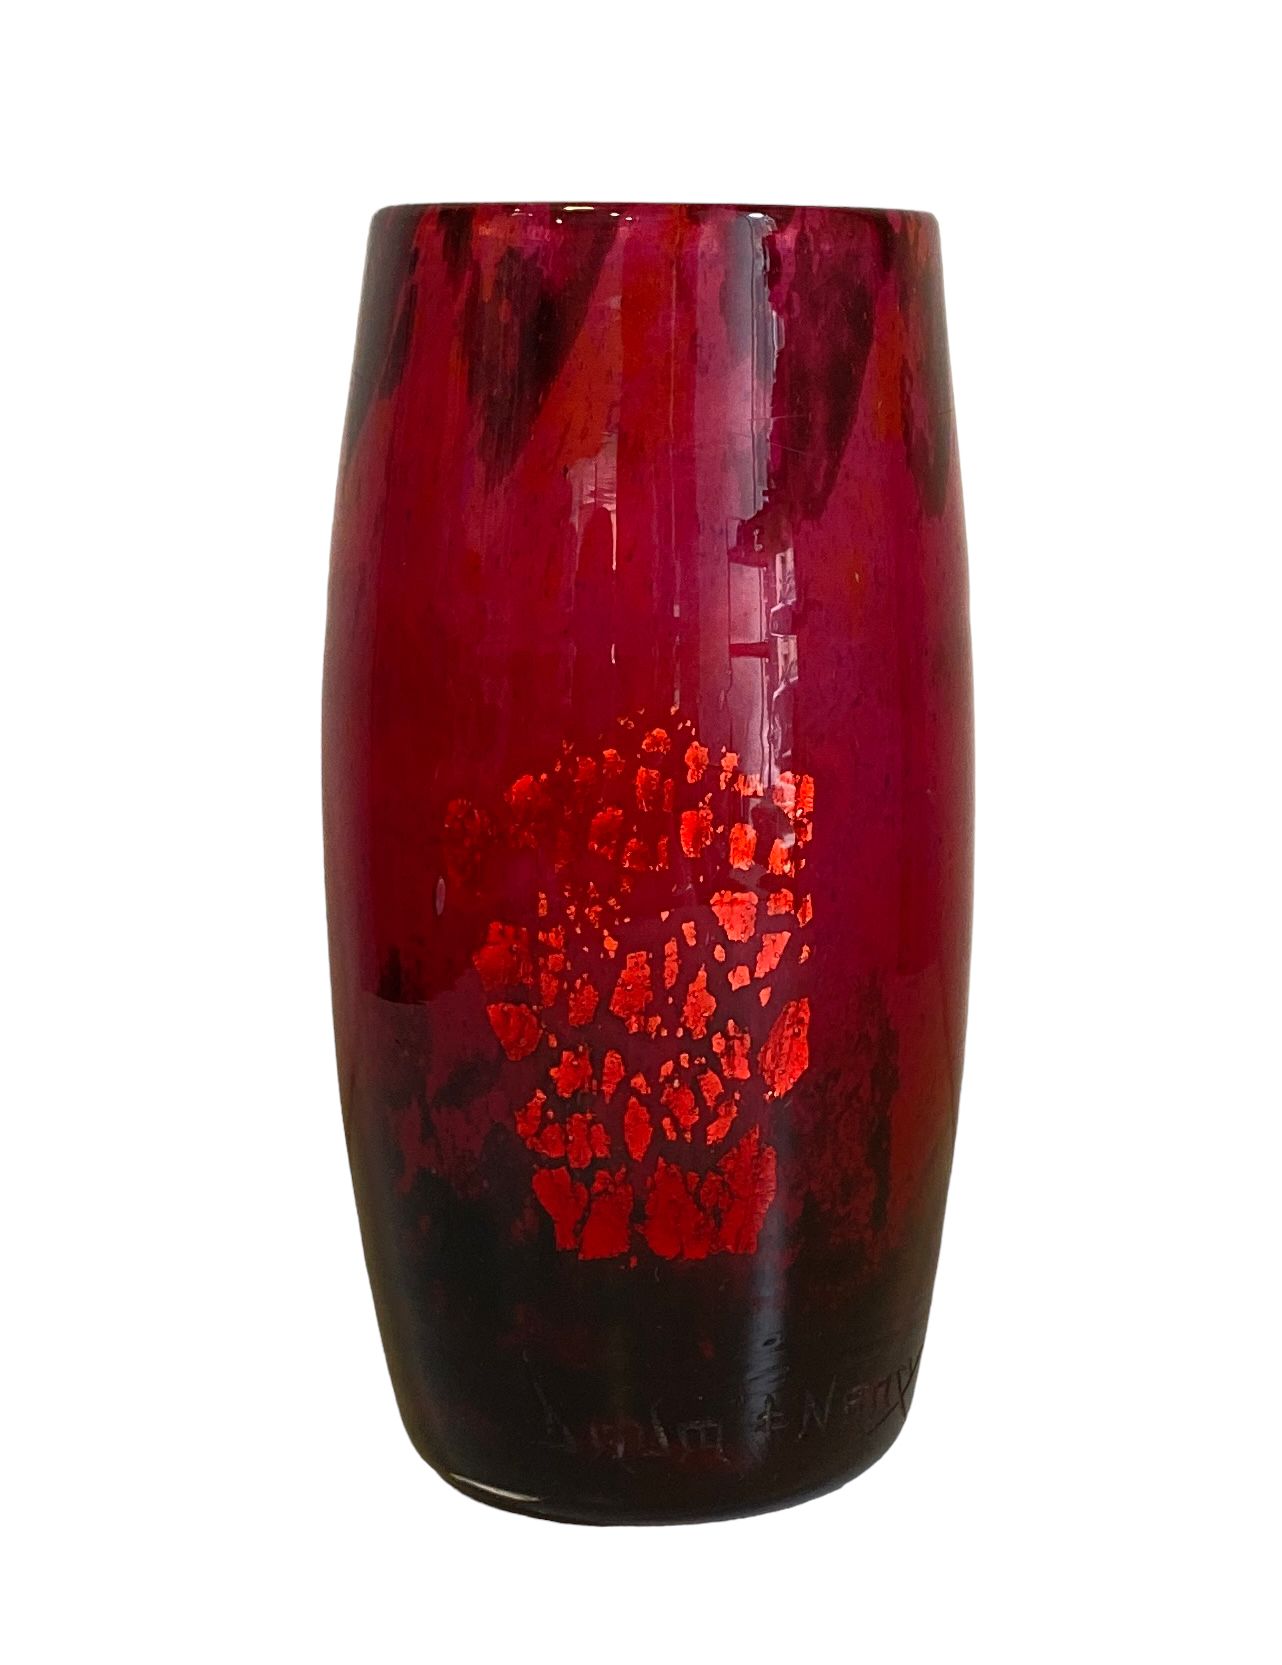 Null Daum Nancy
Jarrón de vidrio jaspeado en tonos rosa, rojo y púrpura realzado&hellip;